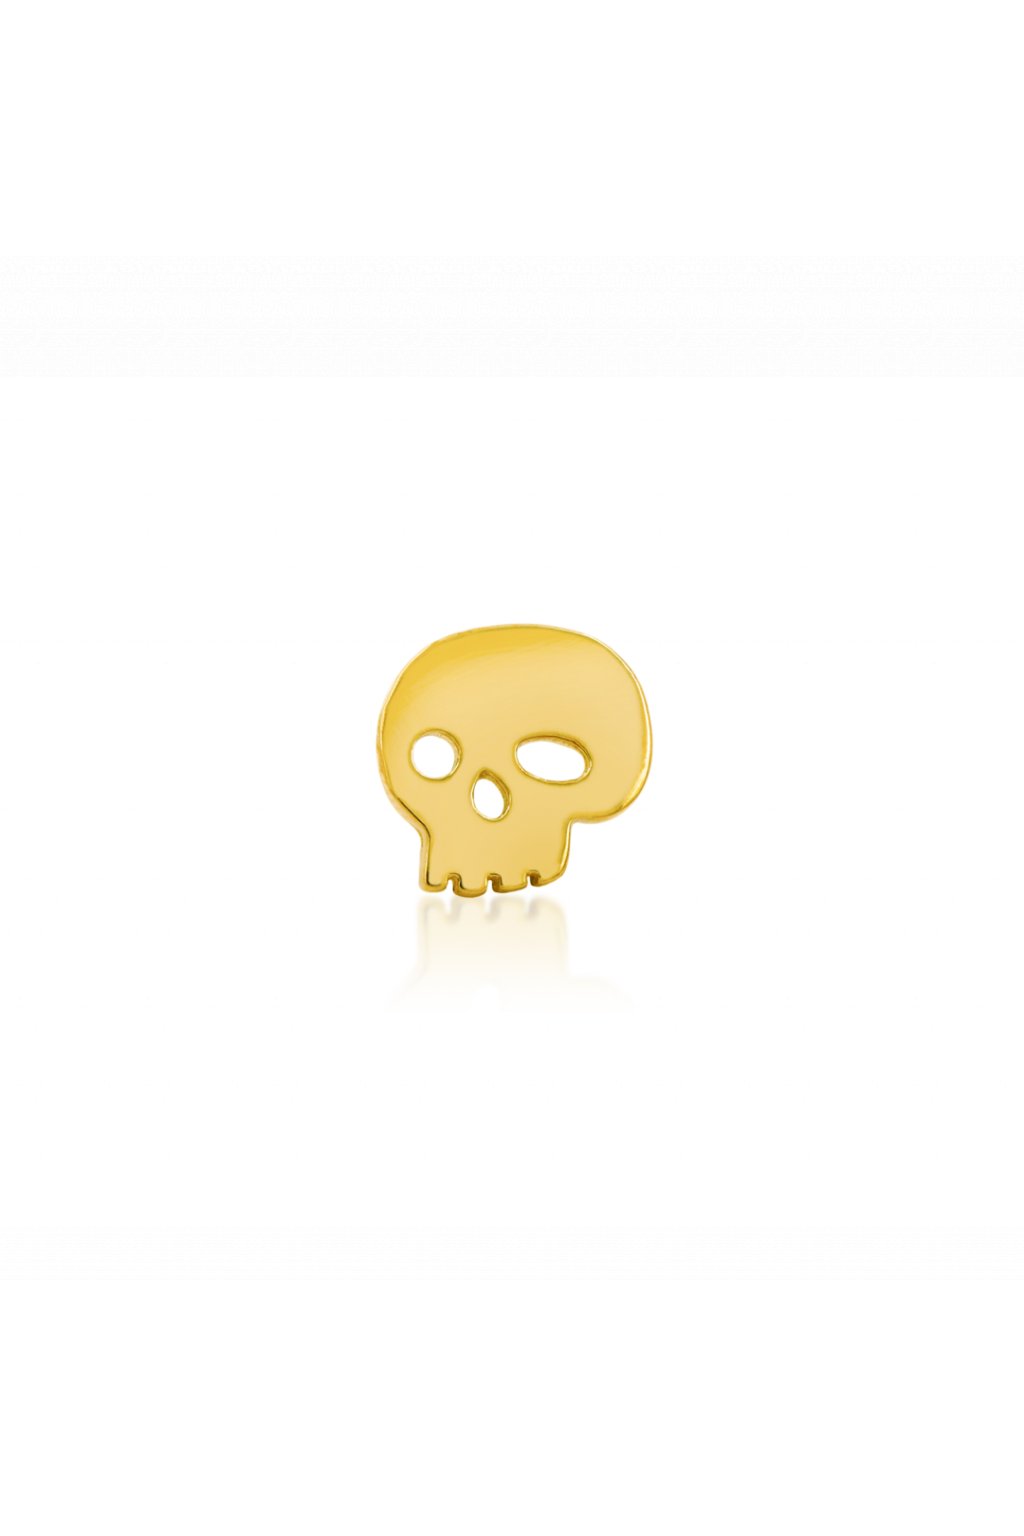 junipurr 14k yellow gold Gold Skull decorative end JJ0024 YG 0 1080x